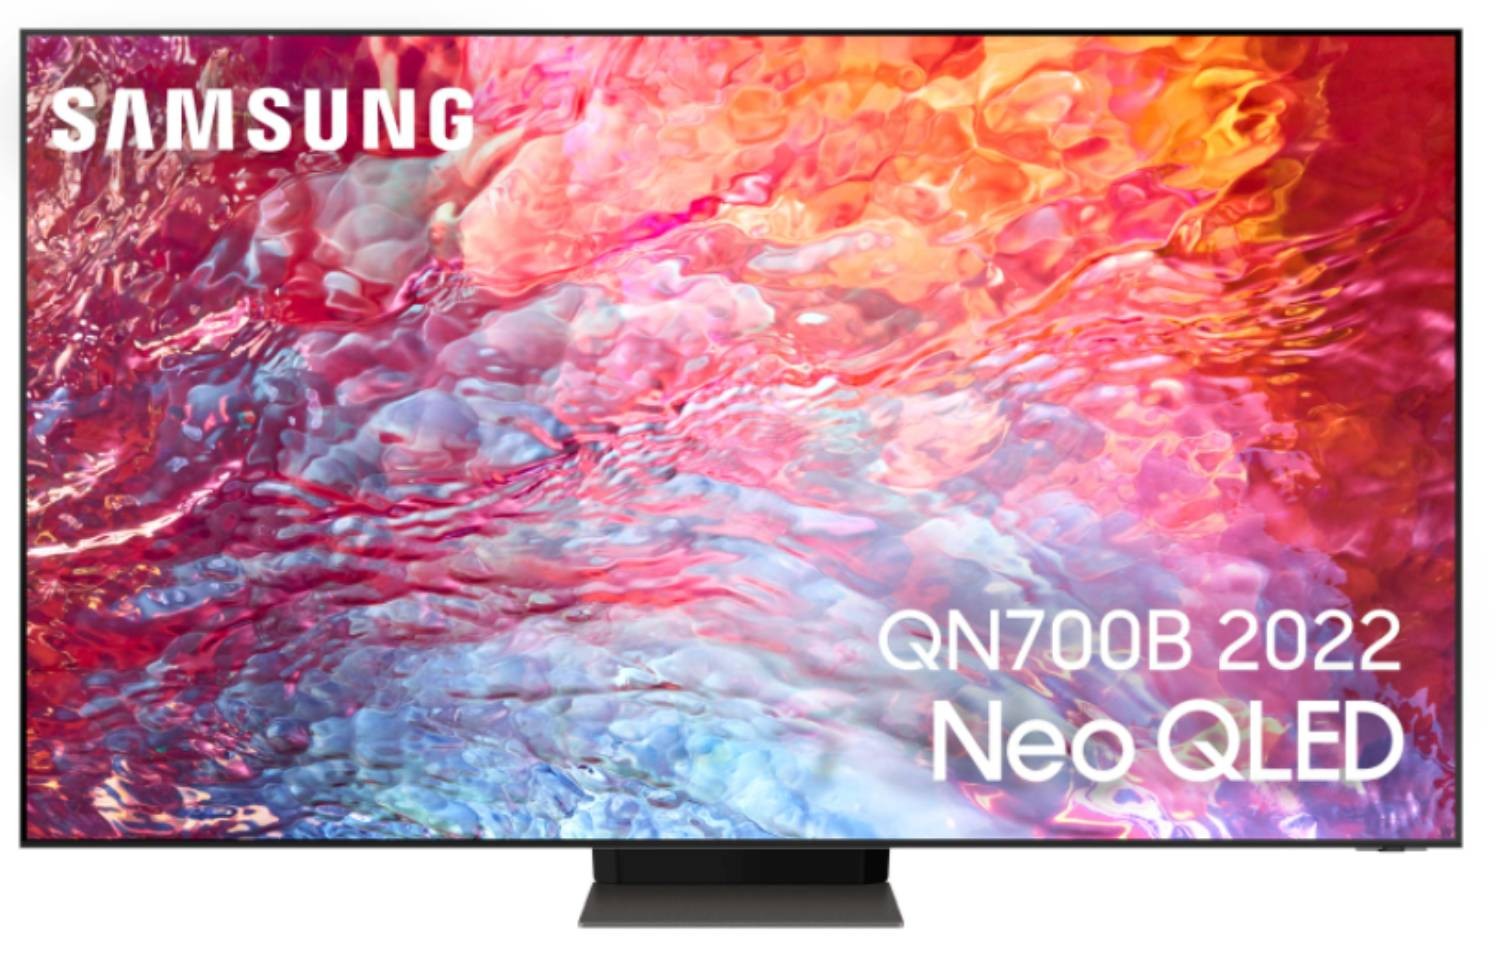 SAMSUNG TV Neo QLED 8K 163 cm TV Neo QLED QE65QN700B 8K 163 cm